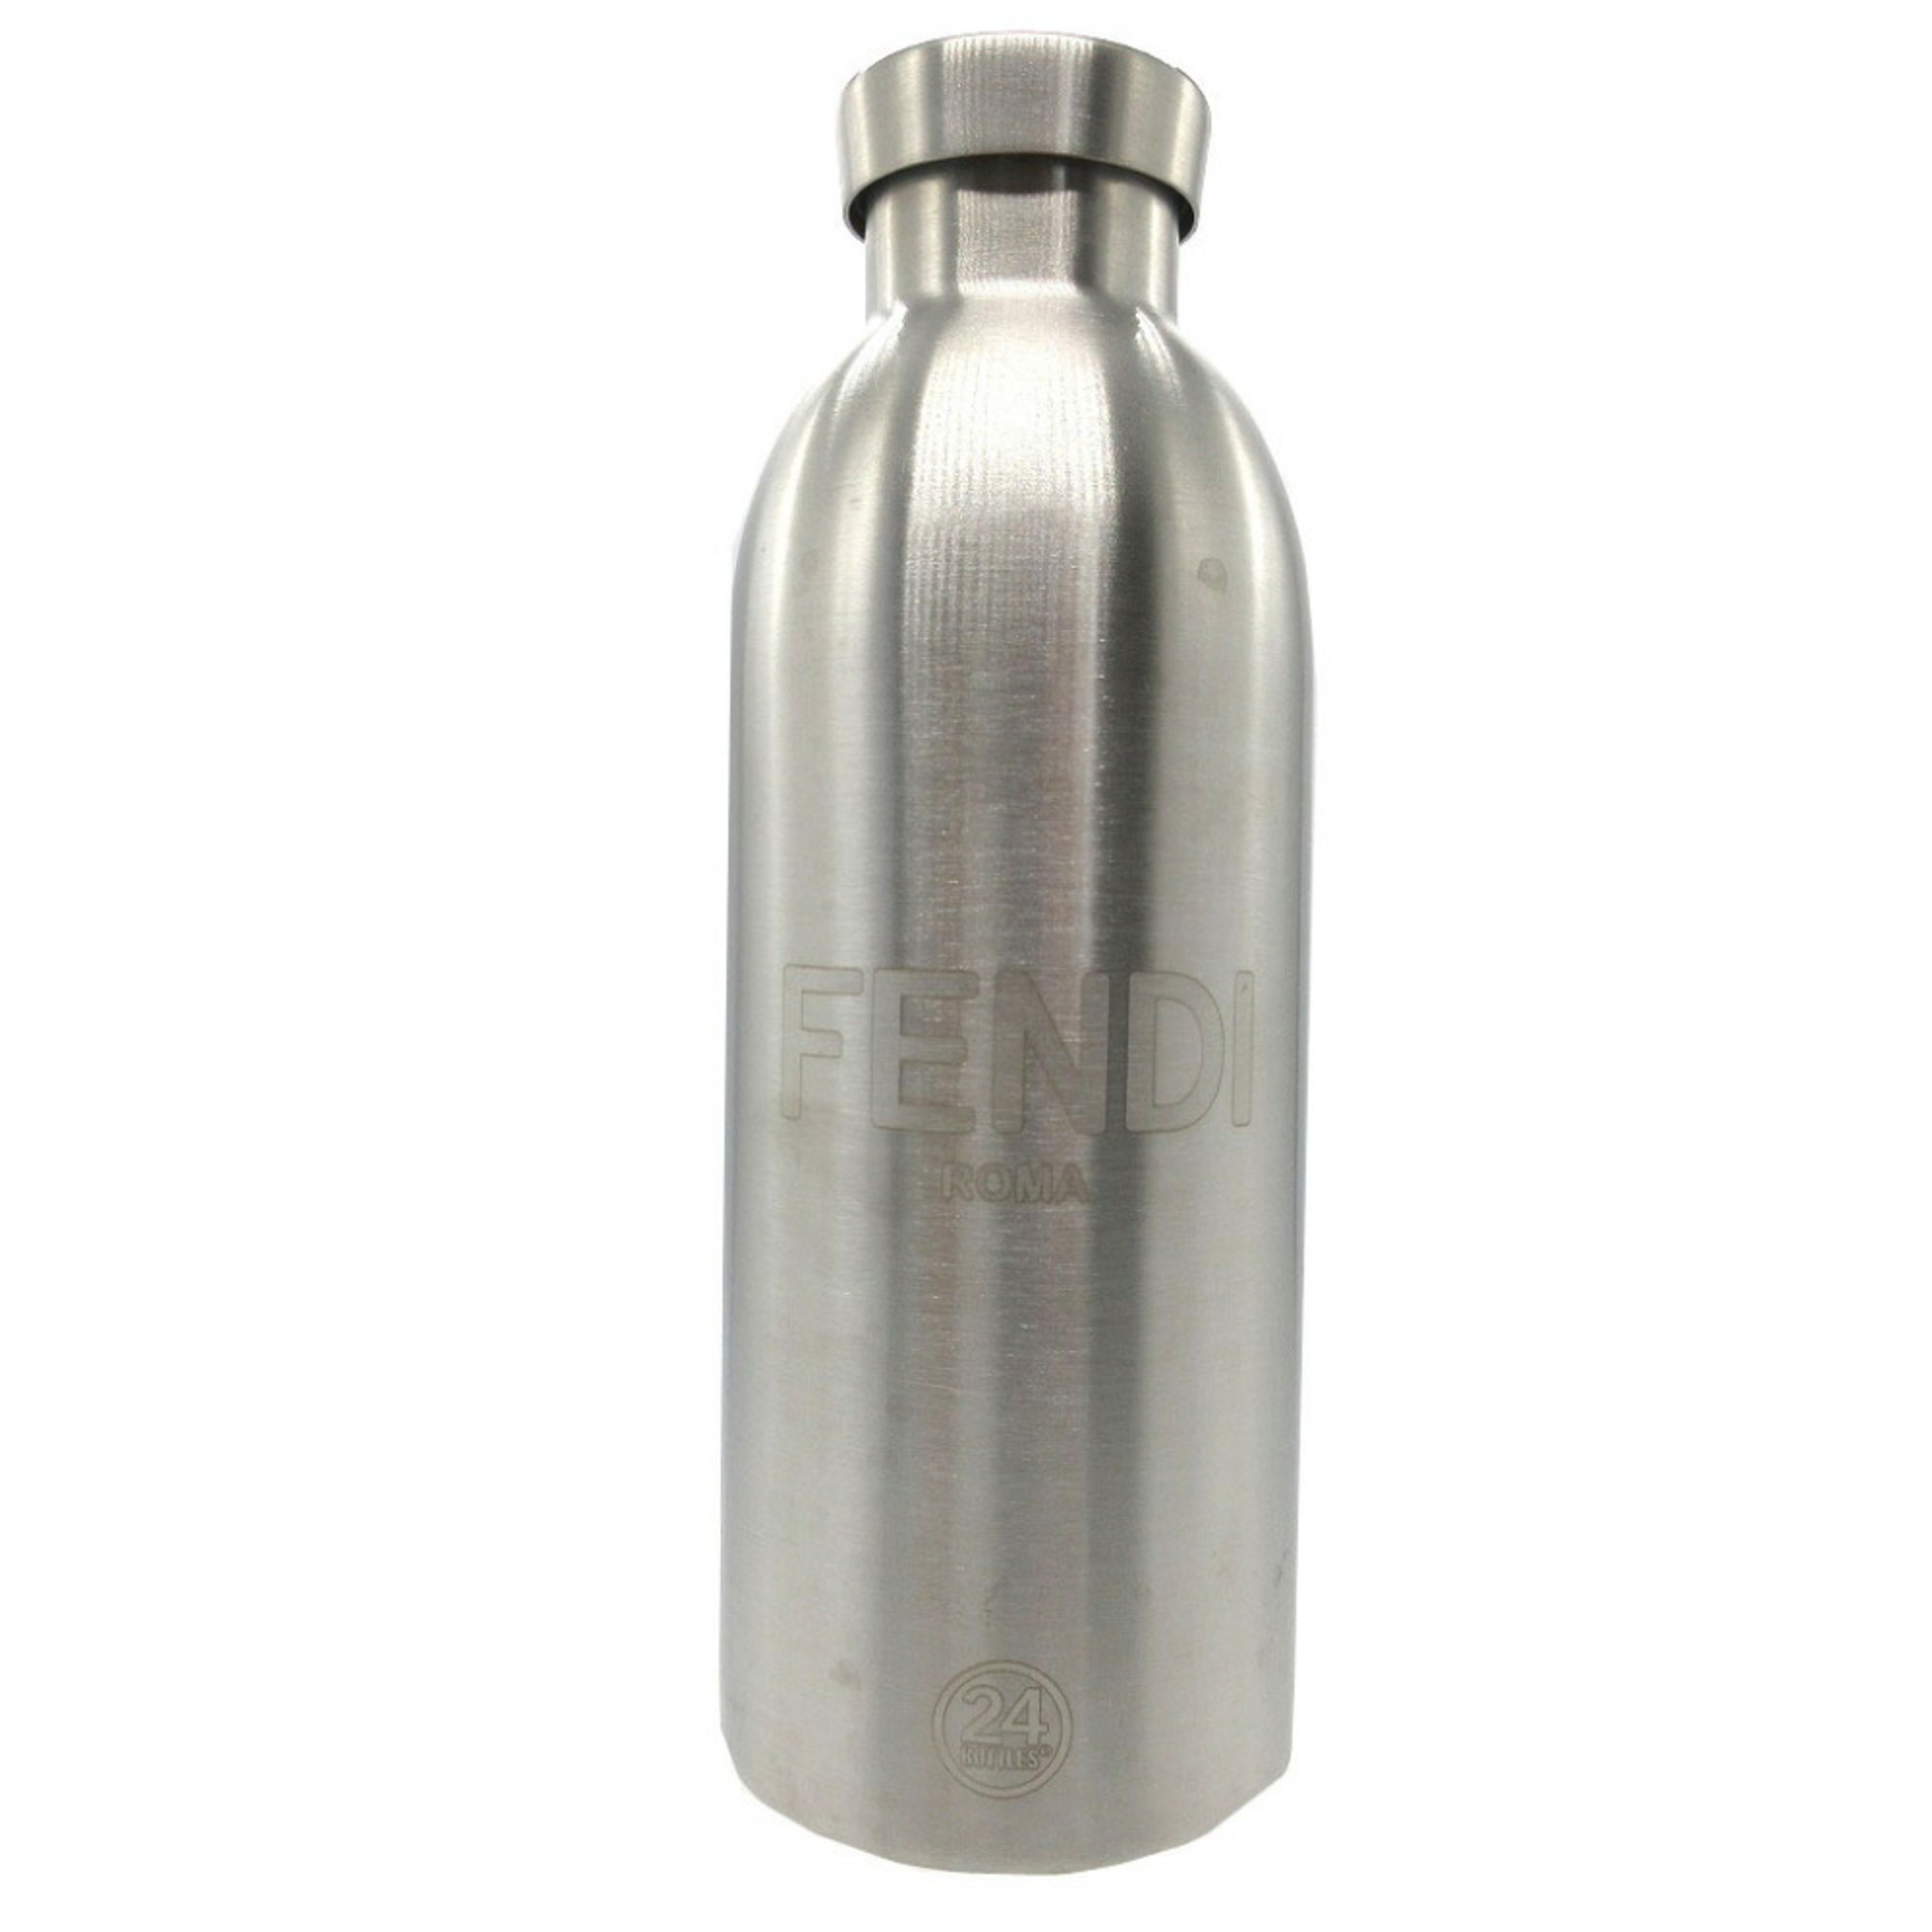 Fendi 7AR972 Leather Orange Stainless Steel Bottle Shoulder Holder 0230FENDI